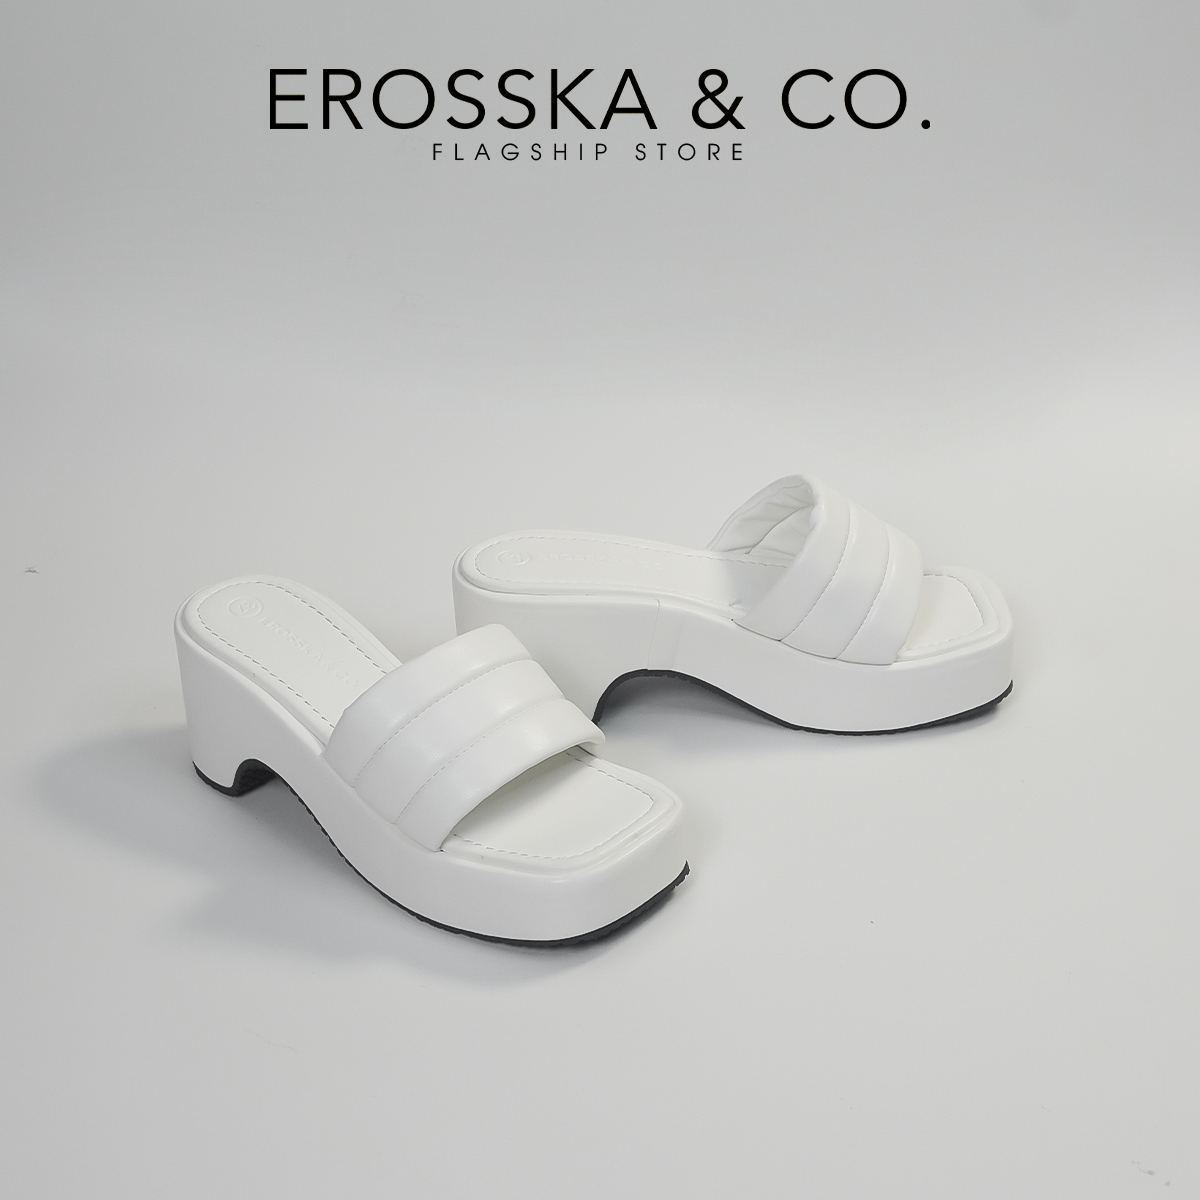 Erosska - Dép nữ đế xuồng dày quai ngang cao 7cm - SB023